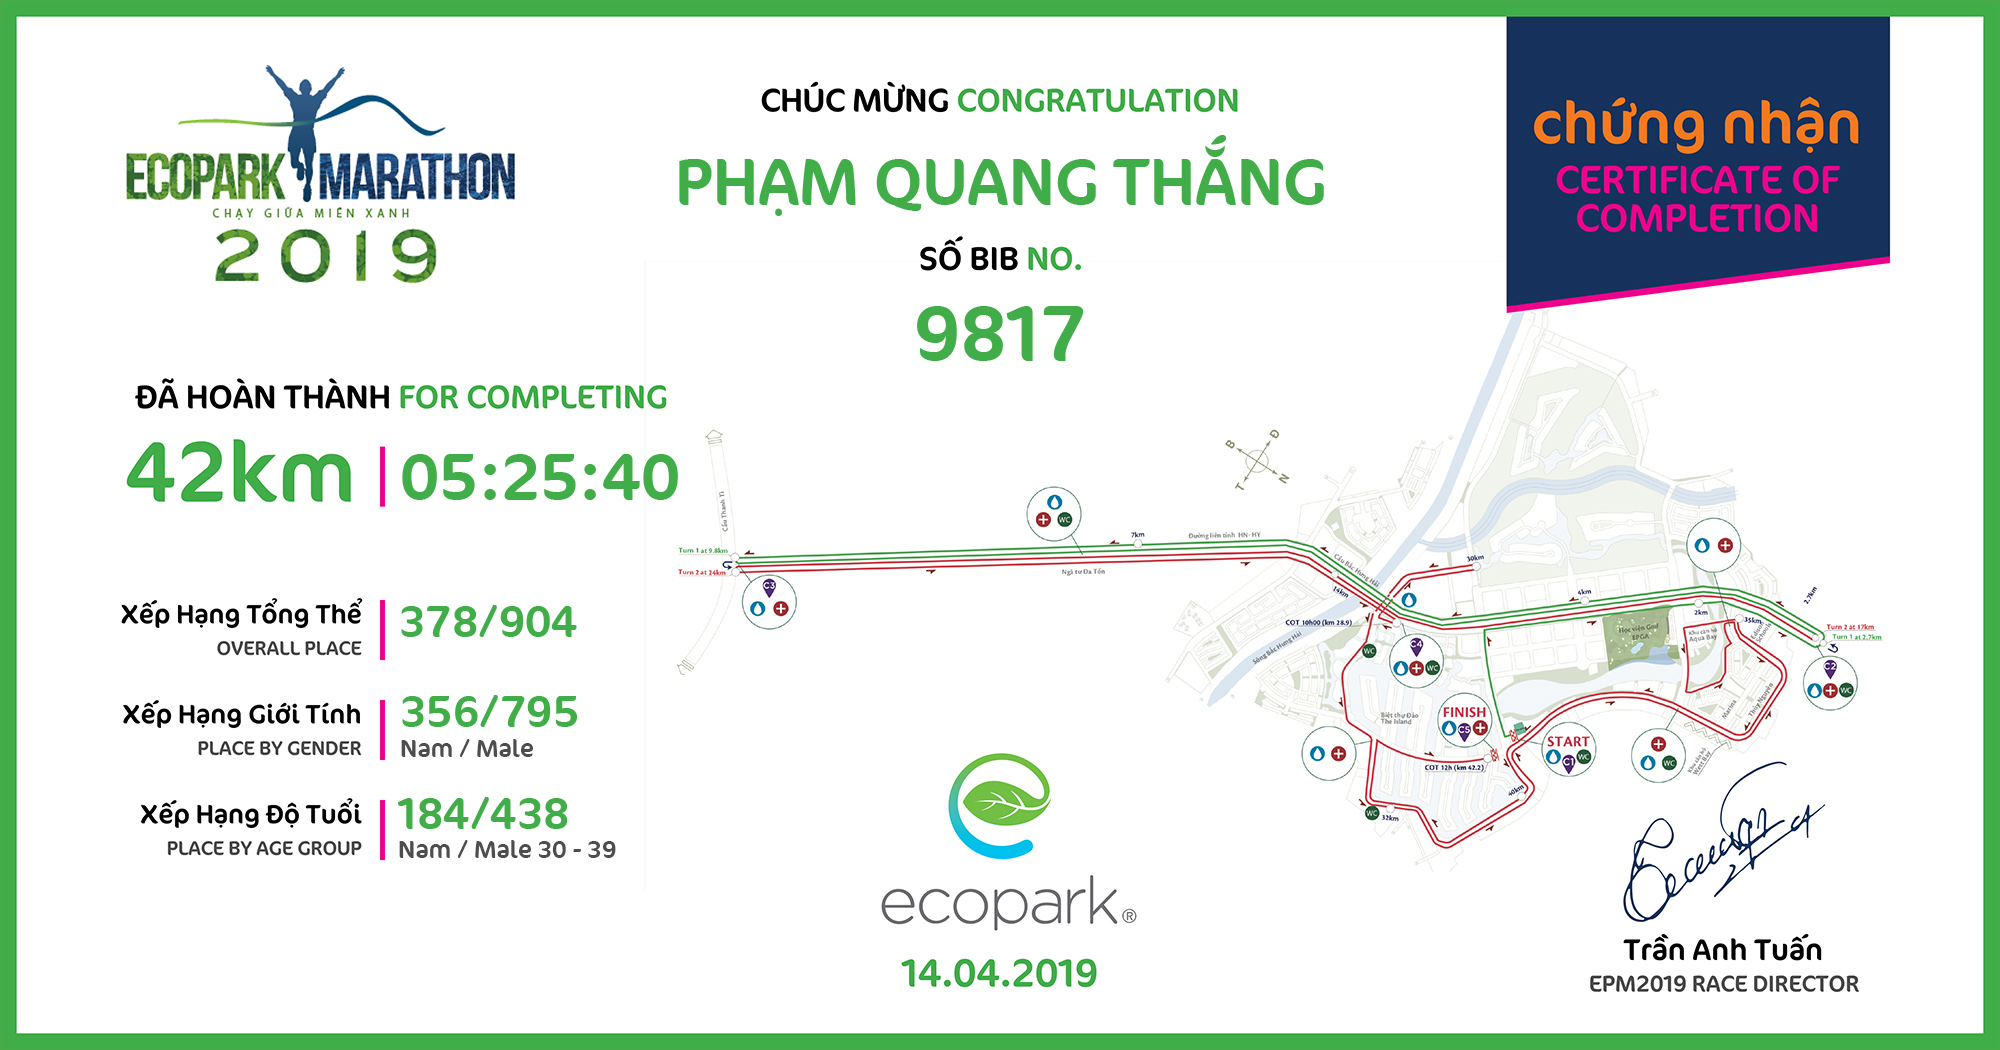 9817 - Phạm Quang Thắng